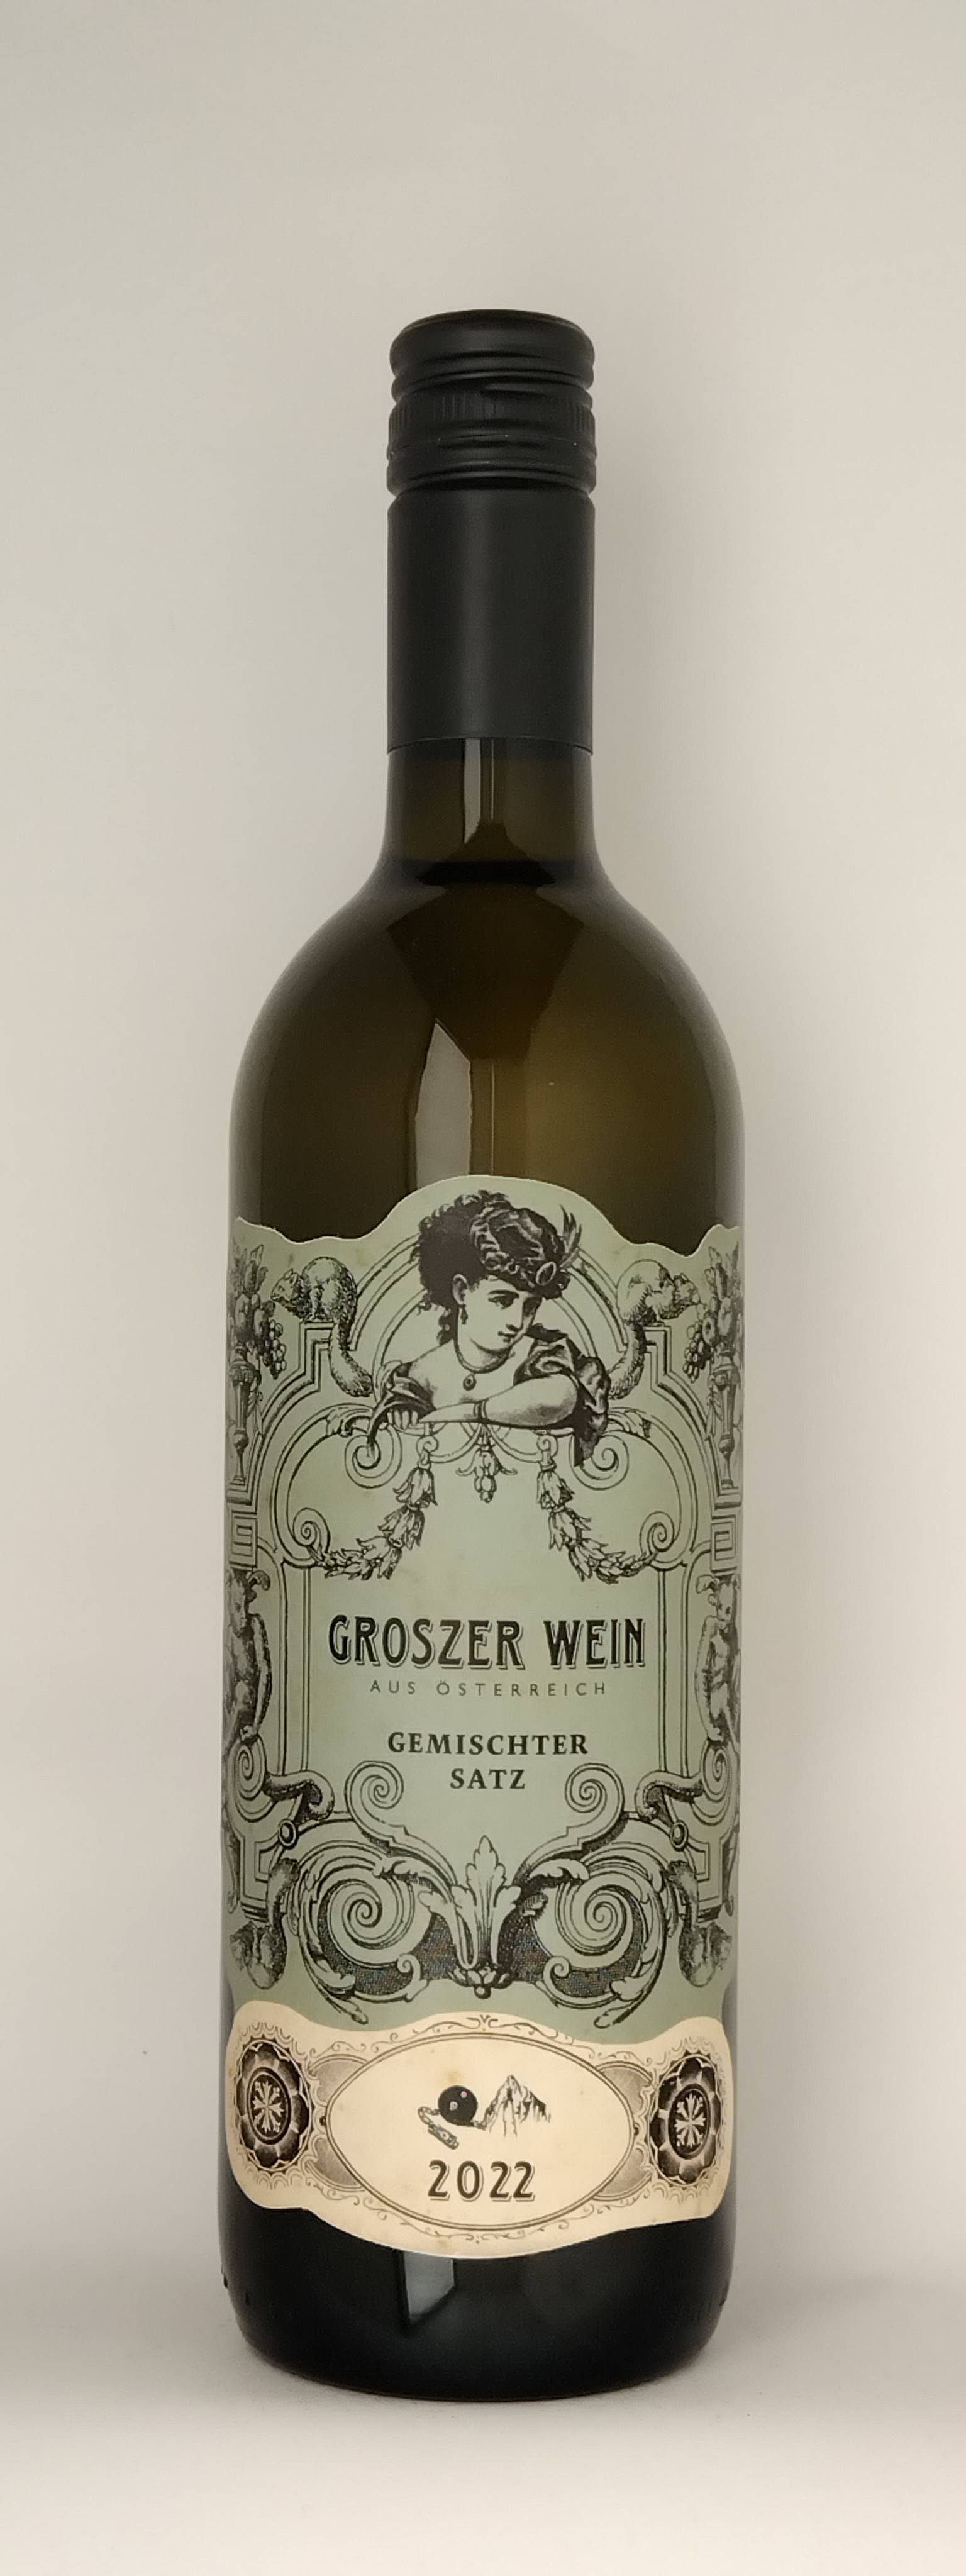 Vinothek Eisenberg Gemischter Satz 2022 Groszer Wein